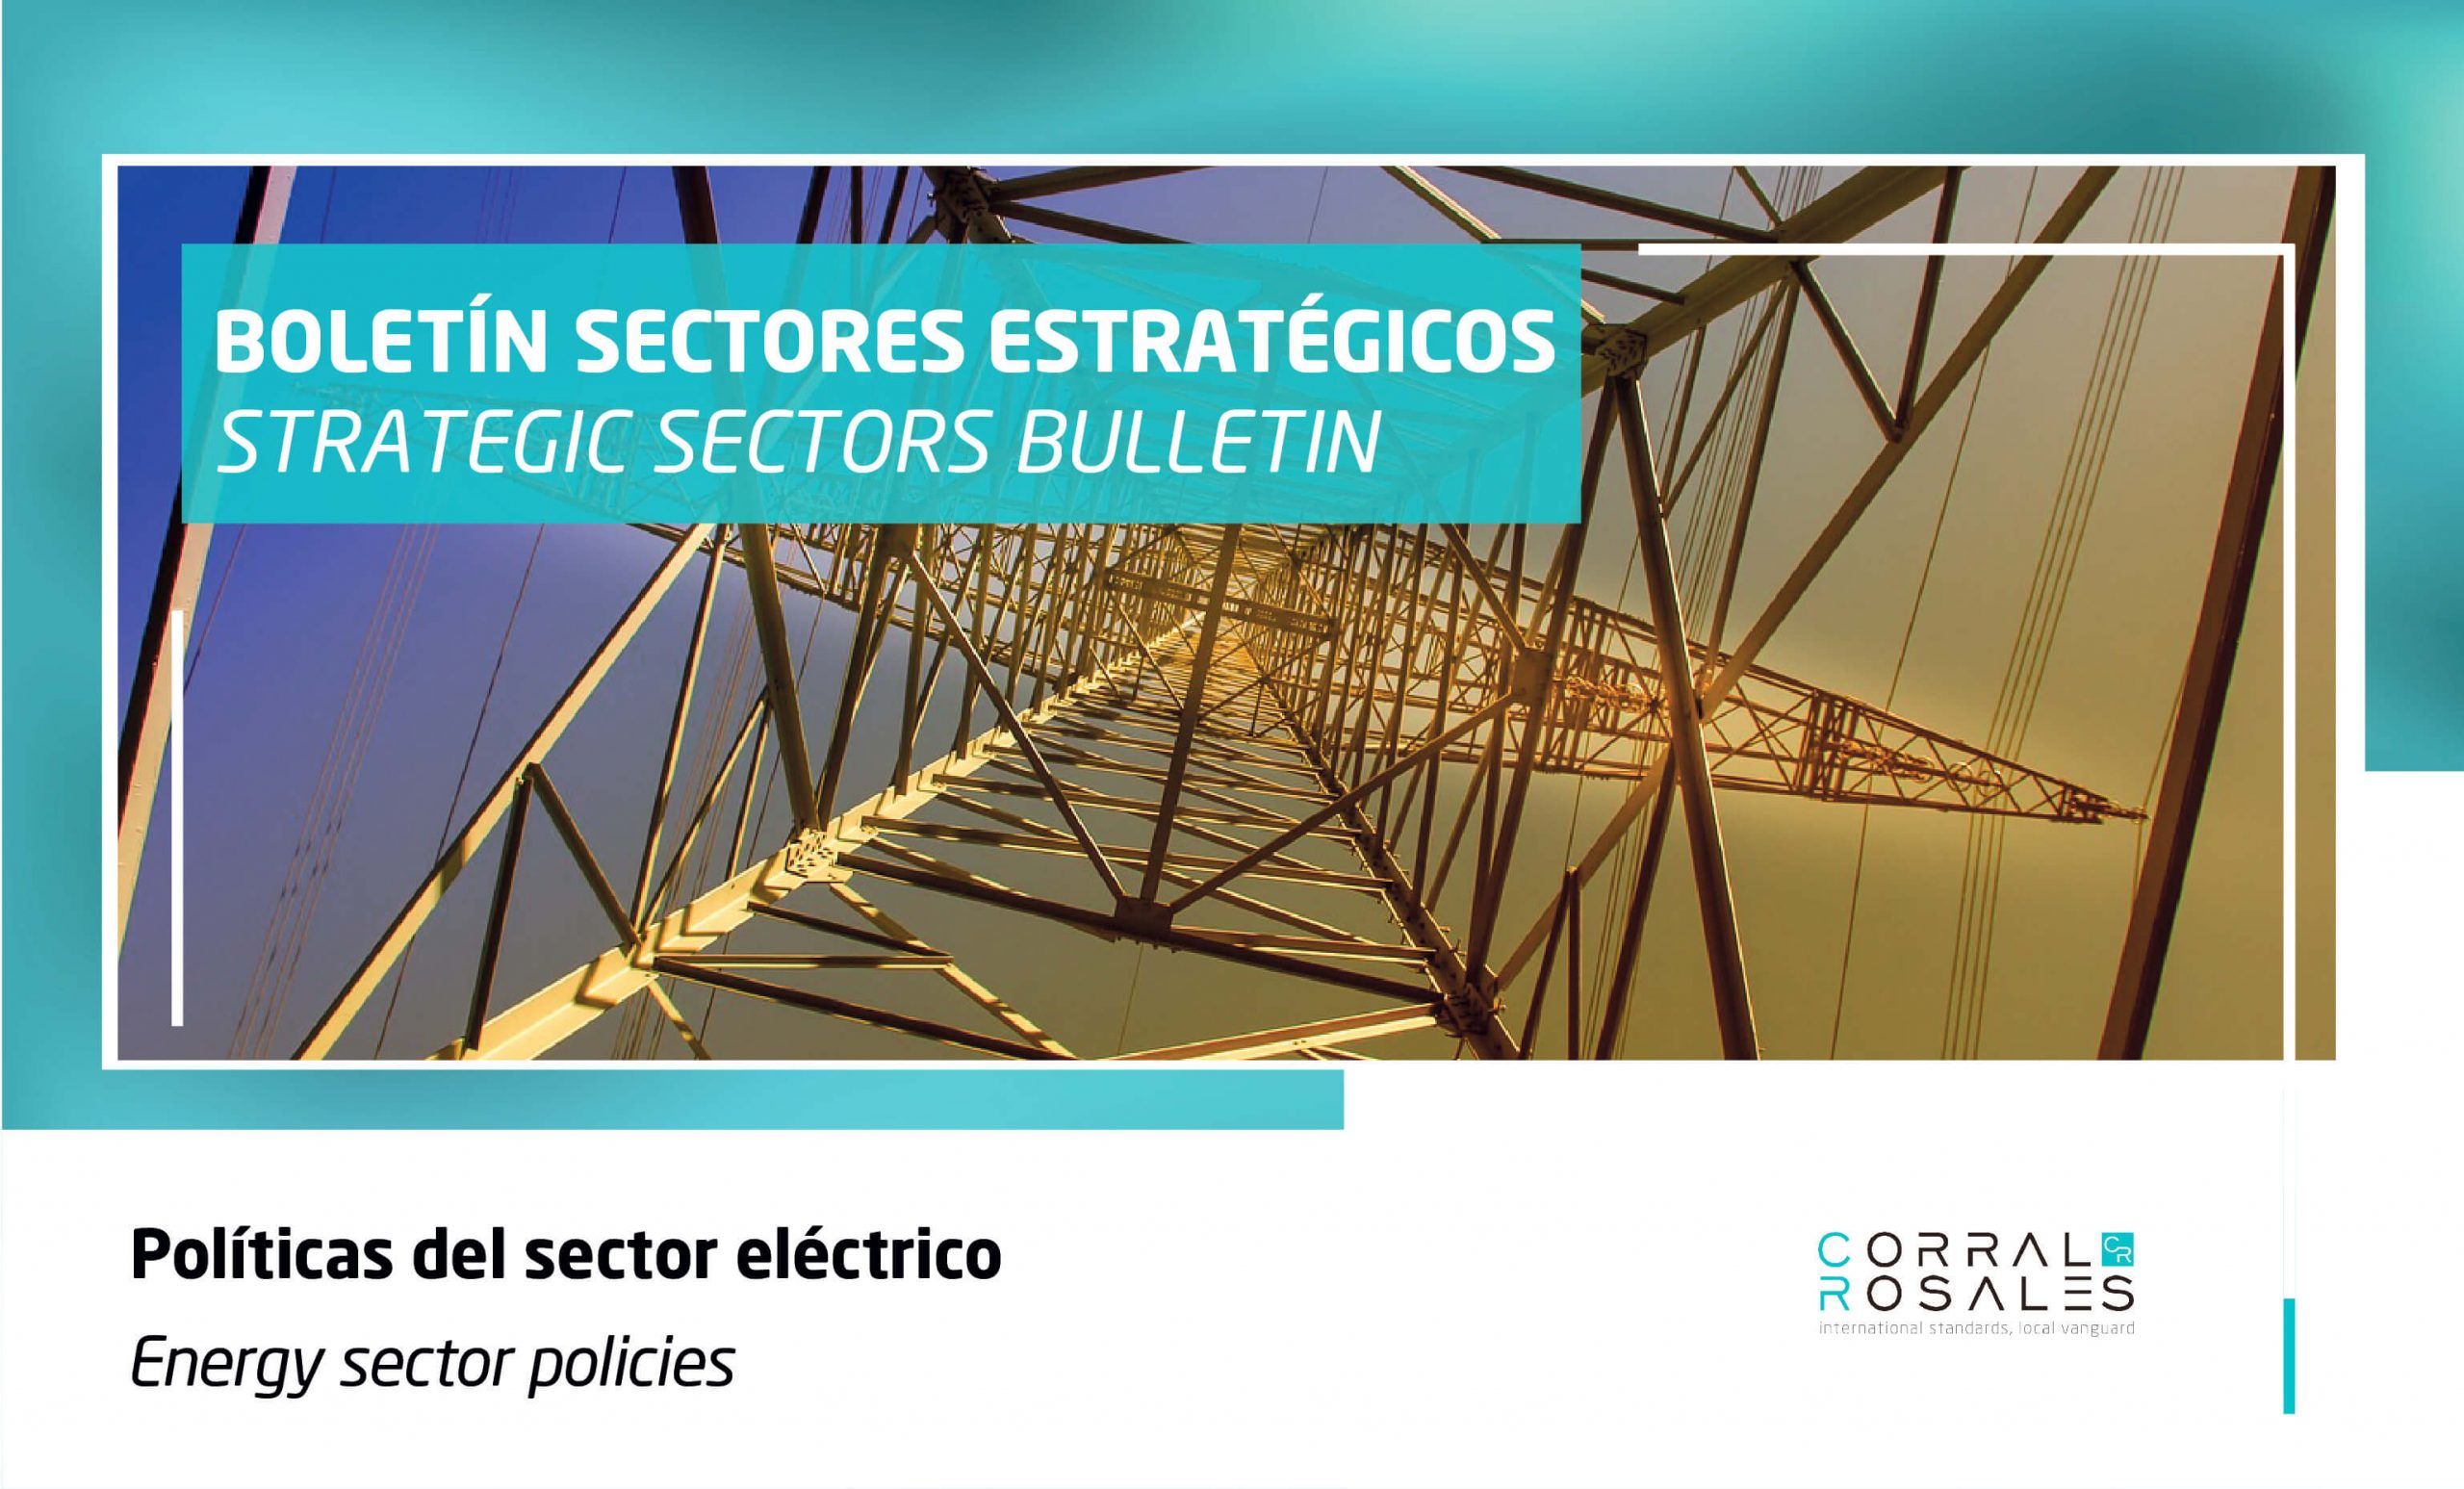 Políticas del sector eléctrico - Boletín CorralRosales - Derecho Corporativo - Contratación Pública - Sector Eléctrico - Ecuador